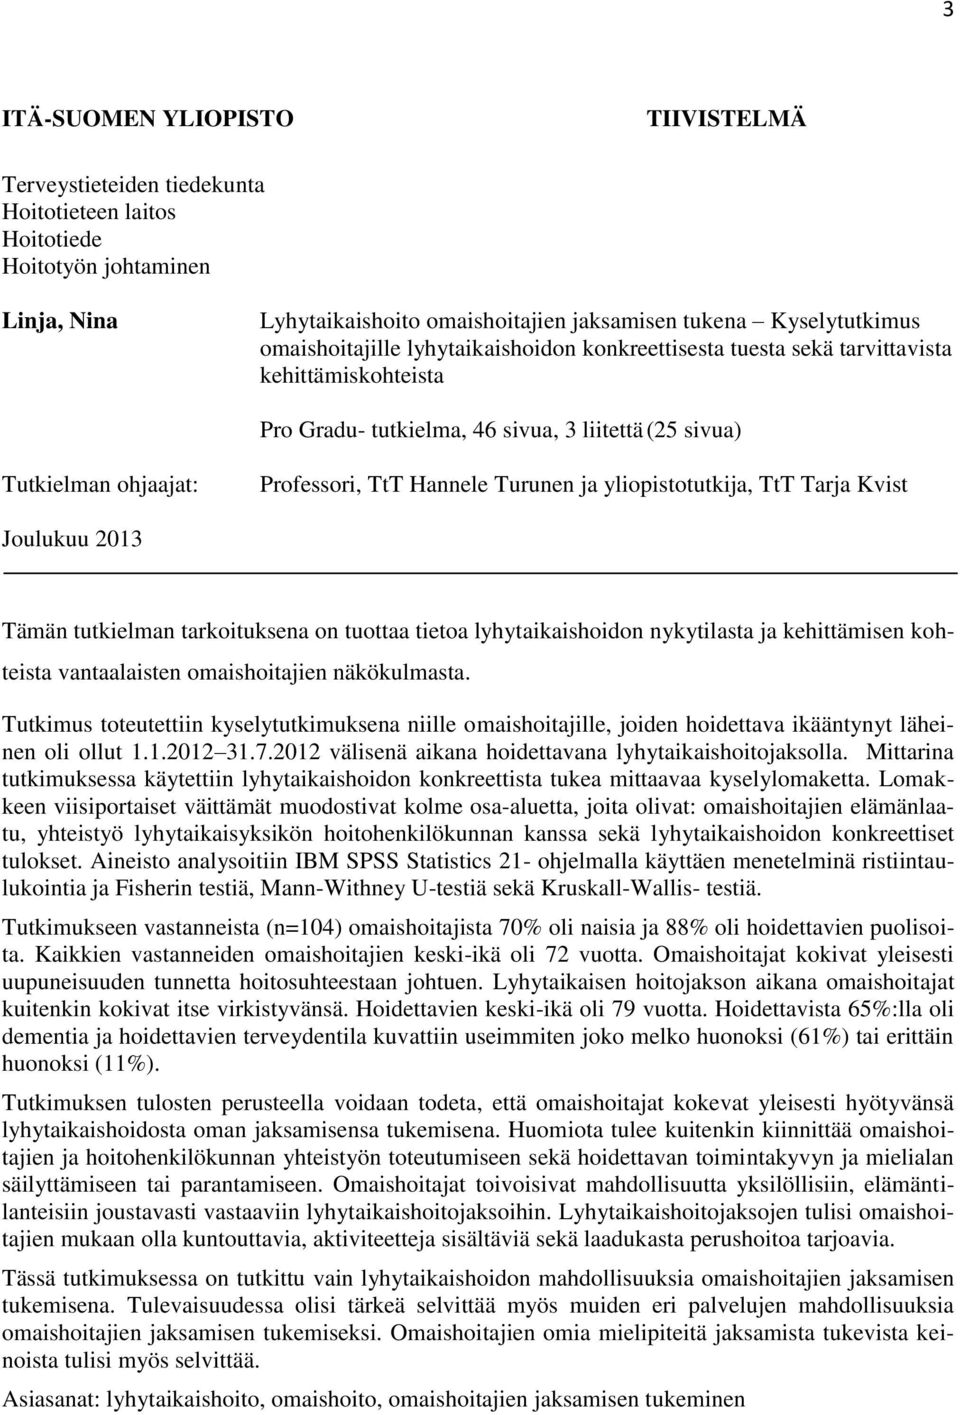 Turunen ja yliopistotutkija, TtT Tarja Kvist Joulukuu 2013 Tämän tutkielman tarkoituksena on tuottaa tietoa lyhytaikaishoidon nykytilasta ja kehittämisen kohteista vantaalaisten omaishoitajien